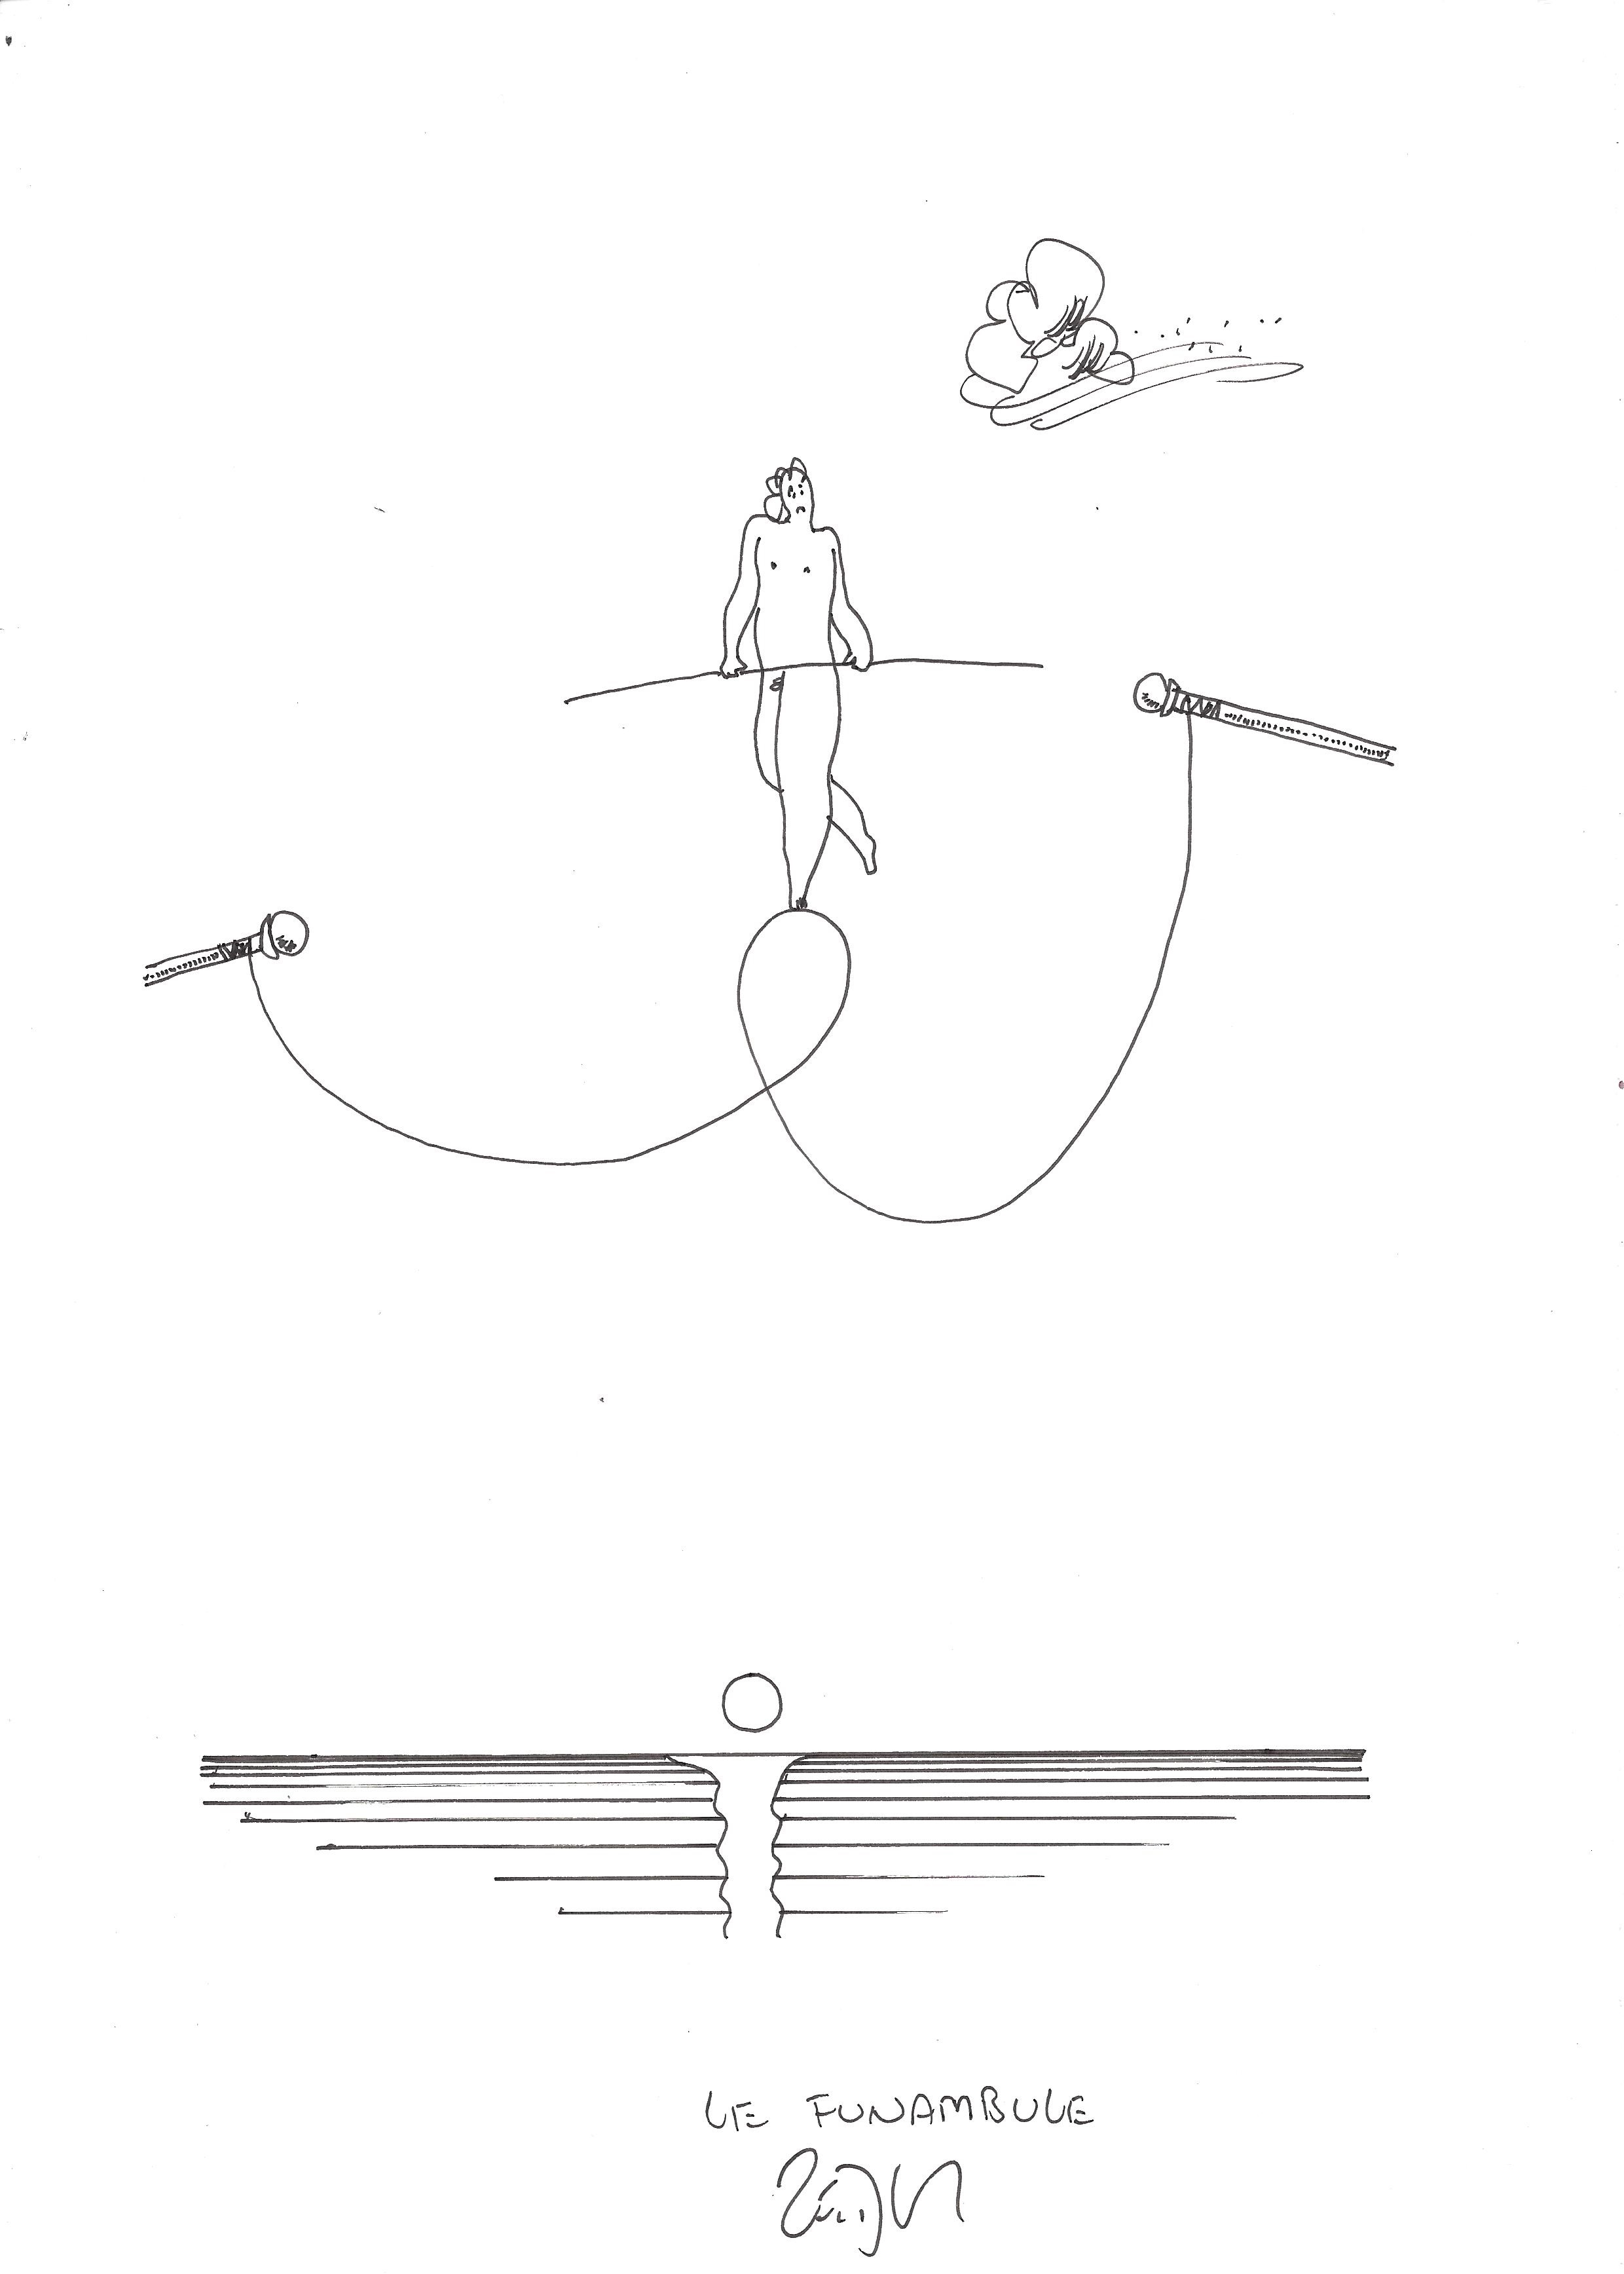 « The tightrope walker – Le funambule »